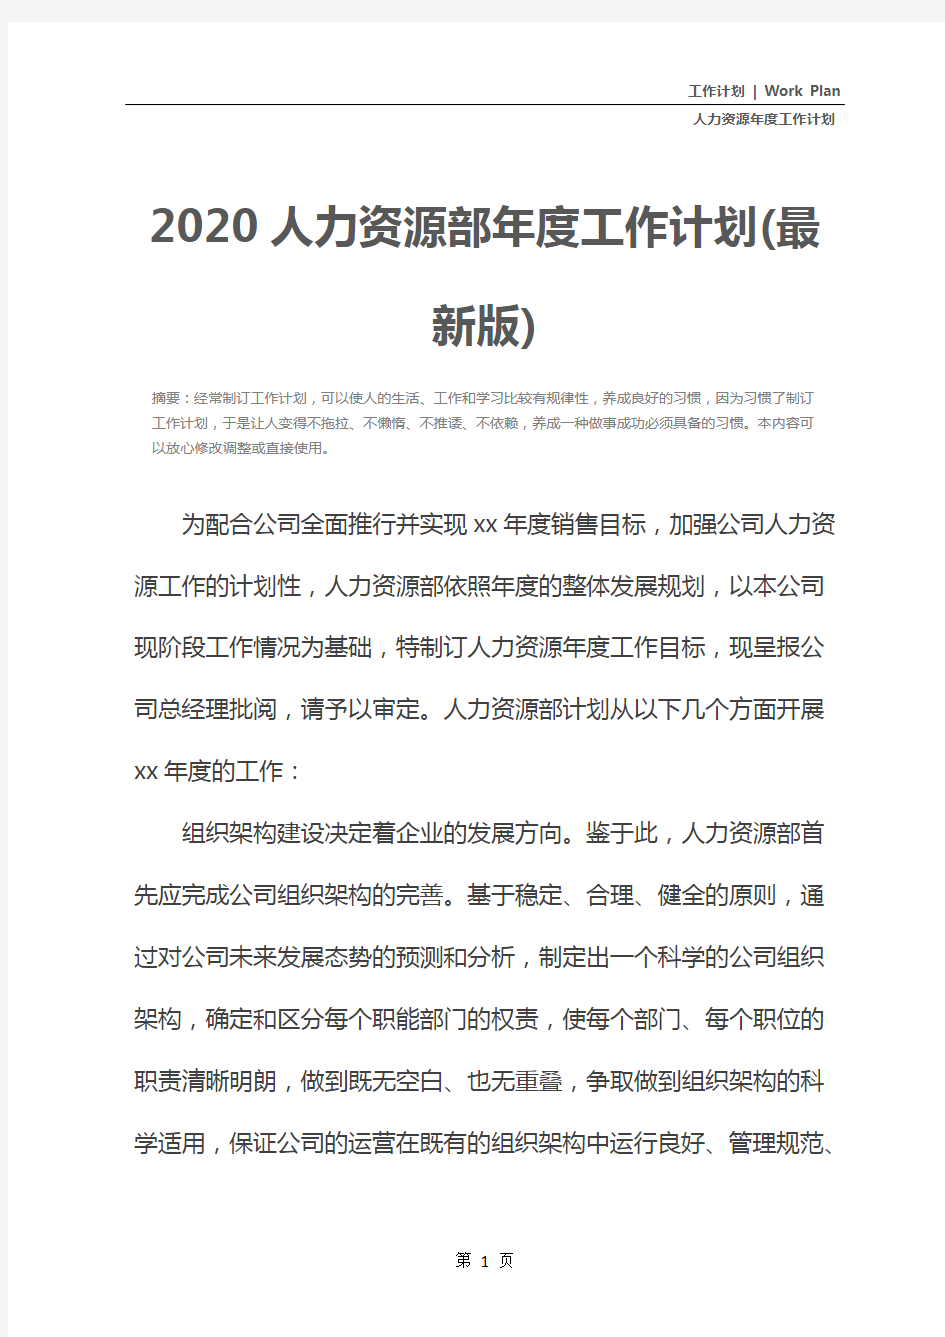 2020人力资源部年度工作计划(最新版)